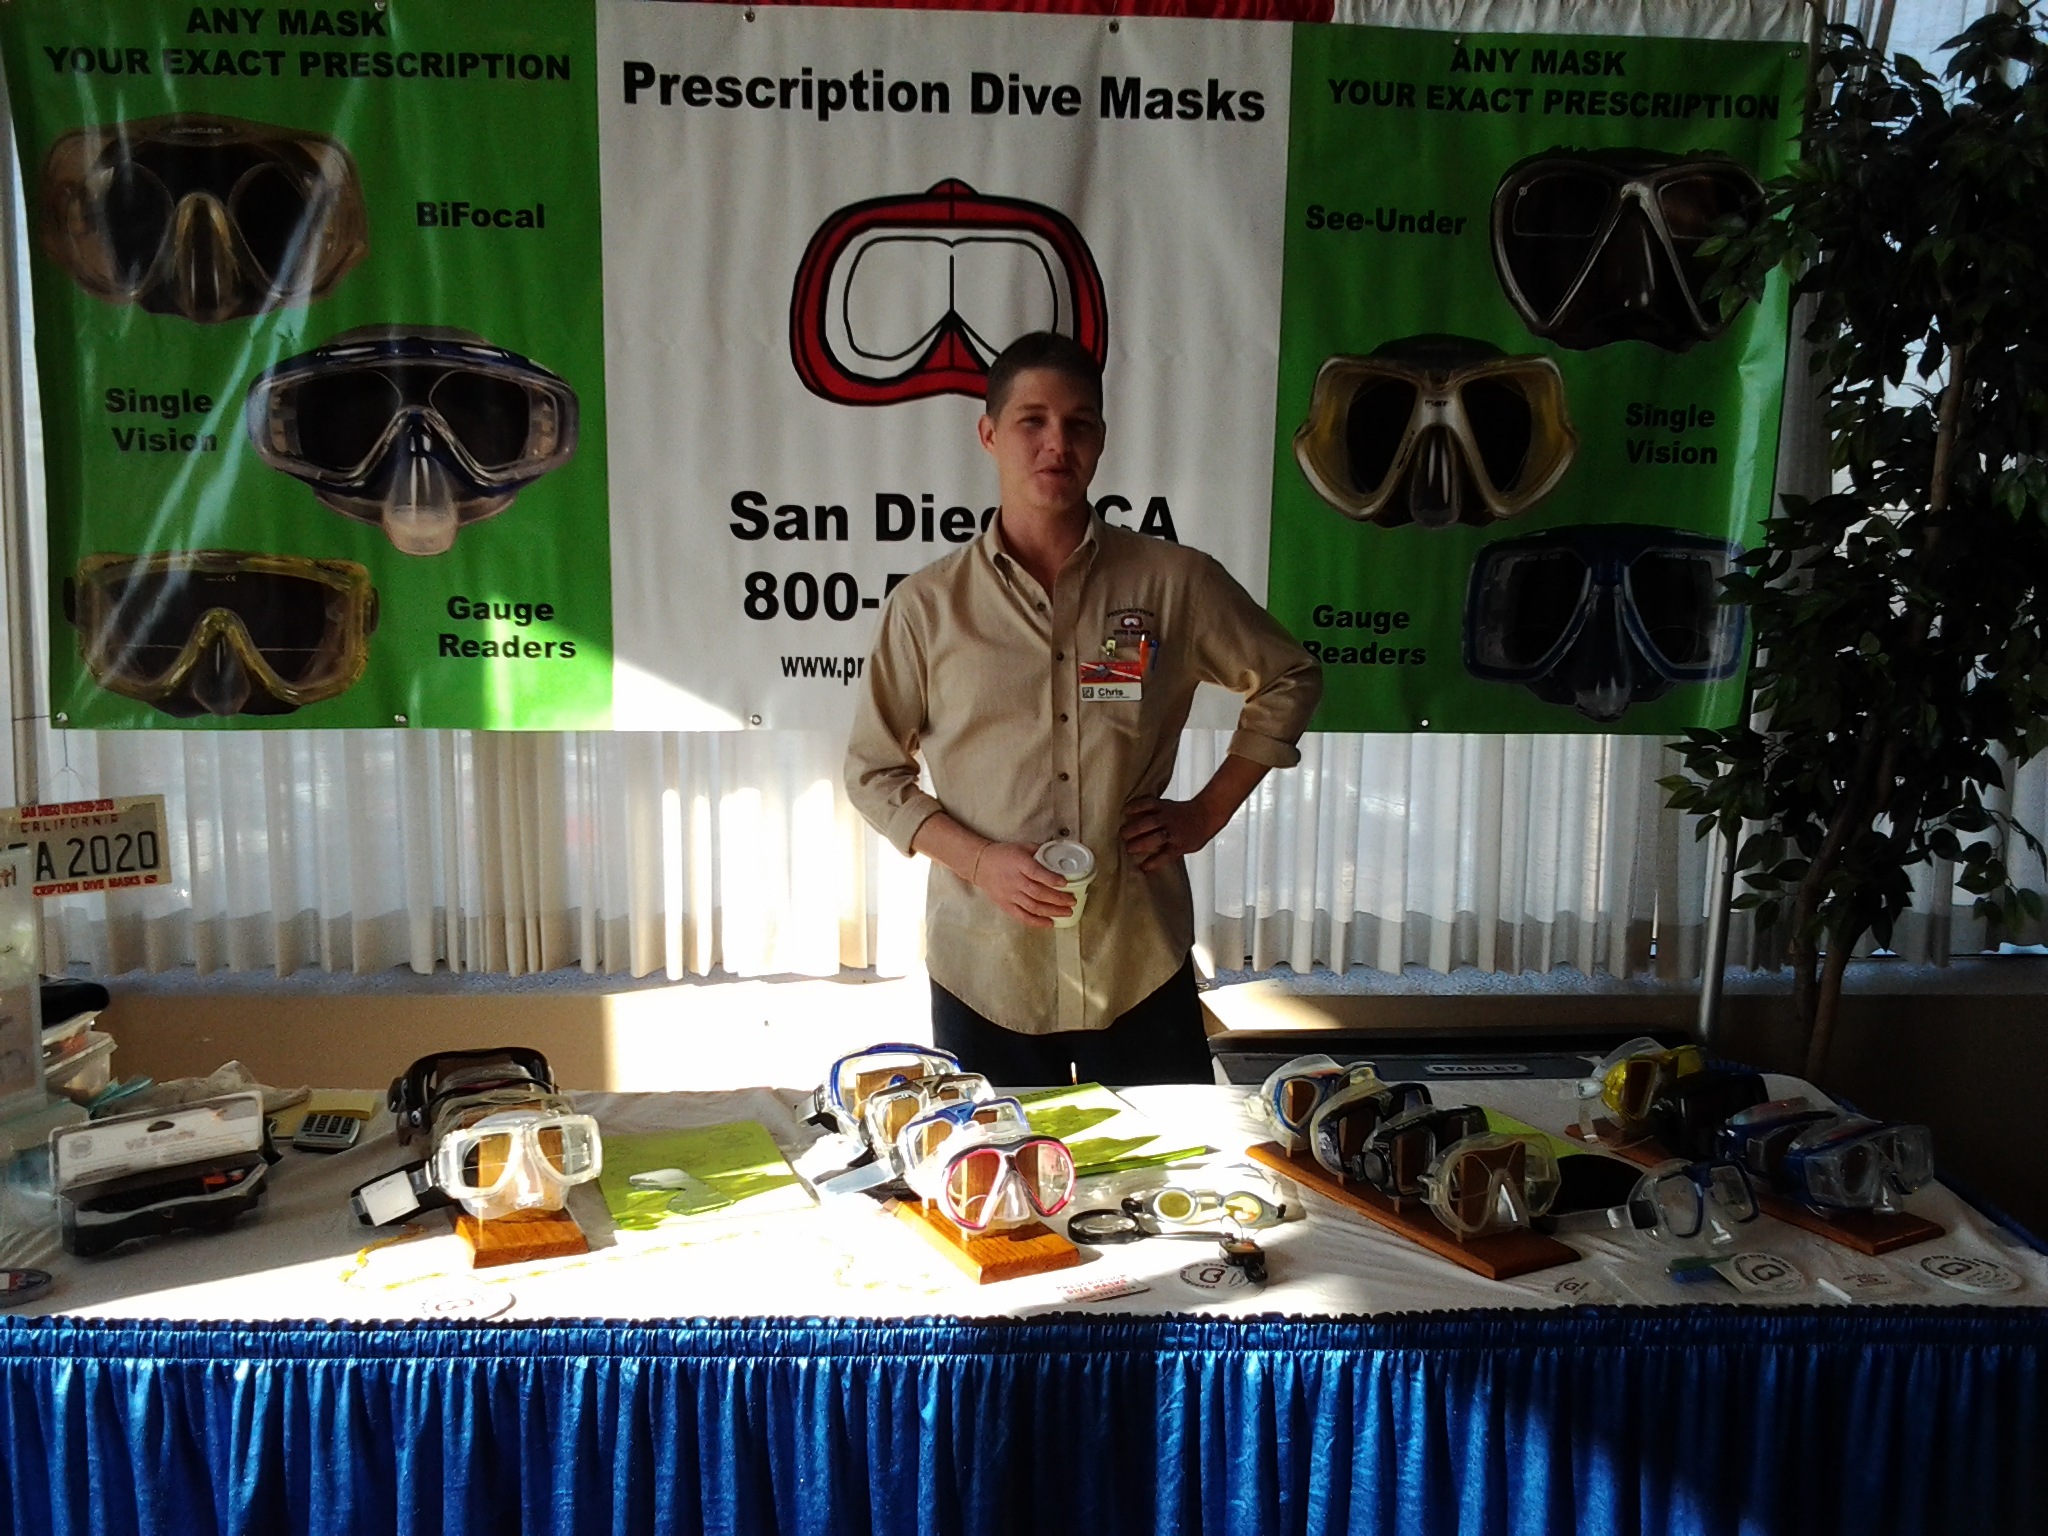 Prescription Dive Masks @ Baltimore Dive Show